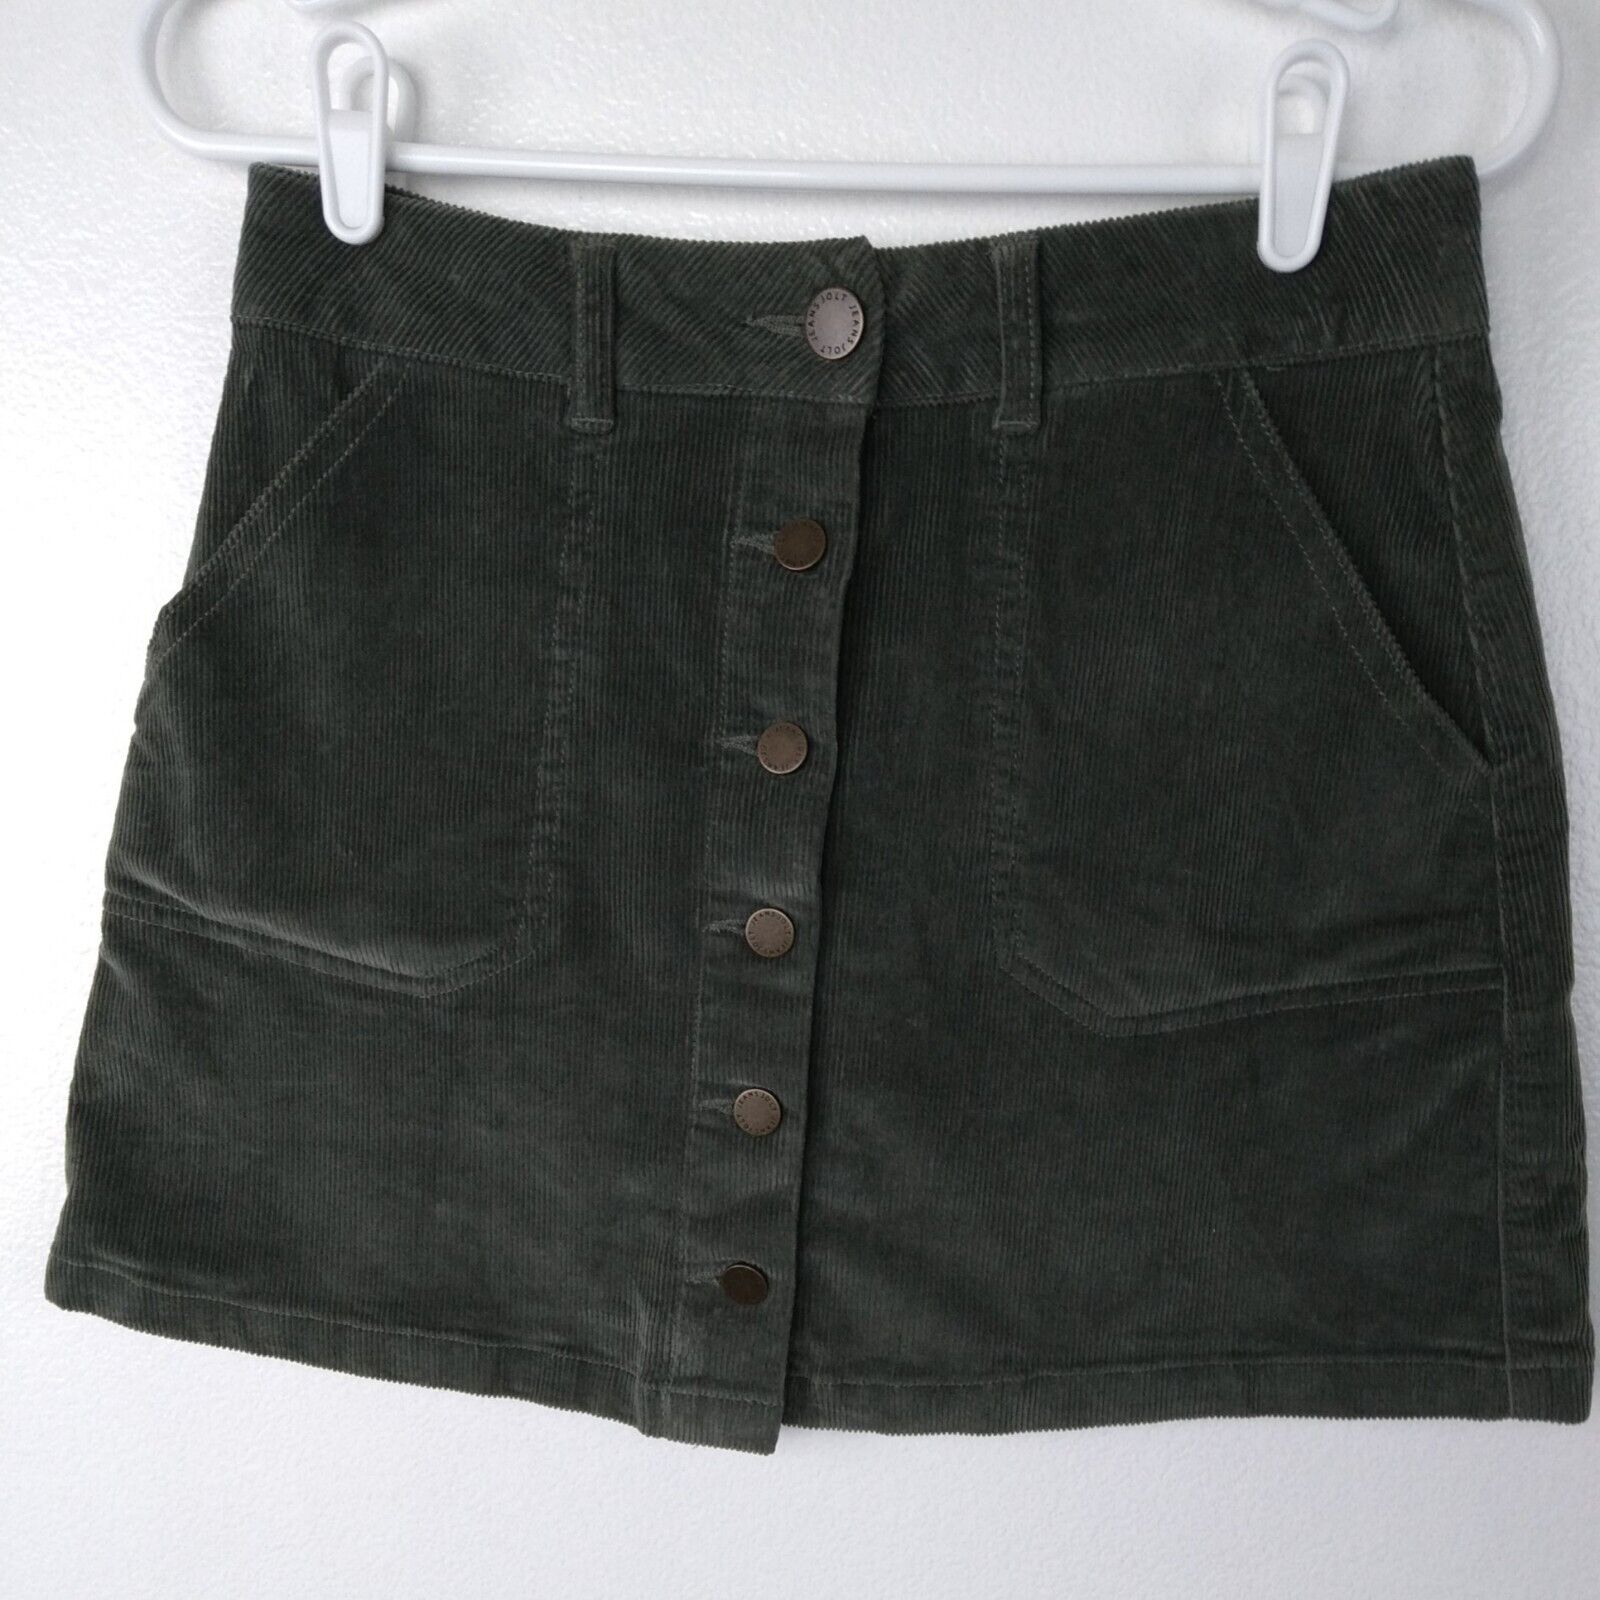 Jolt Corduroy Skirt Size 3 Waist 28 Short Green Button Front Pockets Mini Junior